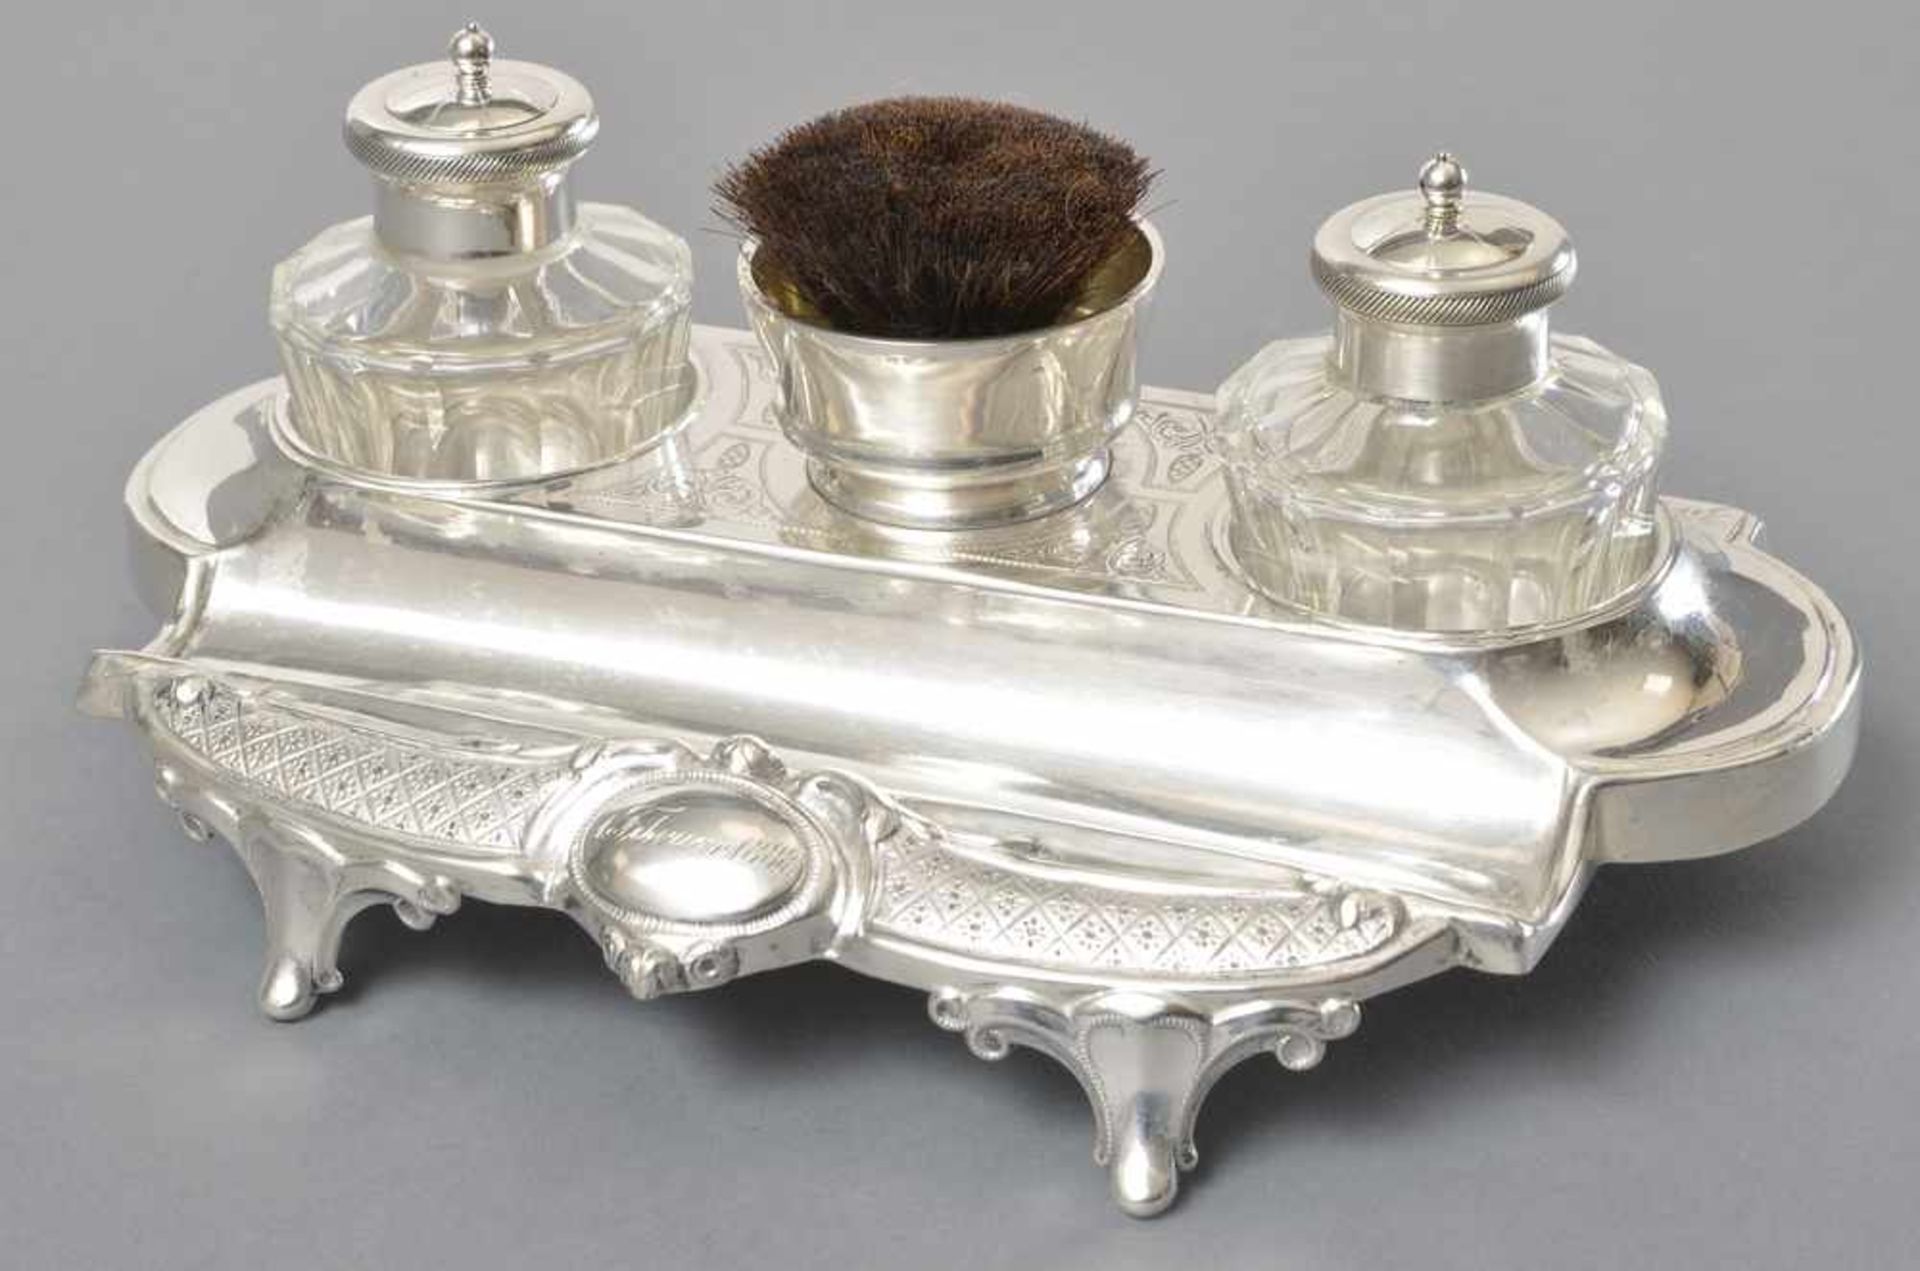 Schreibset mit Kristall Tintenfässern, Untersatz und Deckel Silber 800, Wilkens, gewidmet 1888 an - Bild 3 aus 3